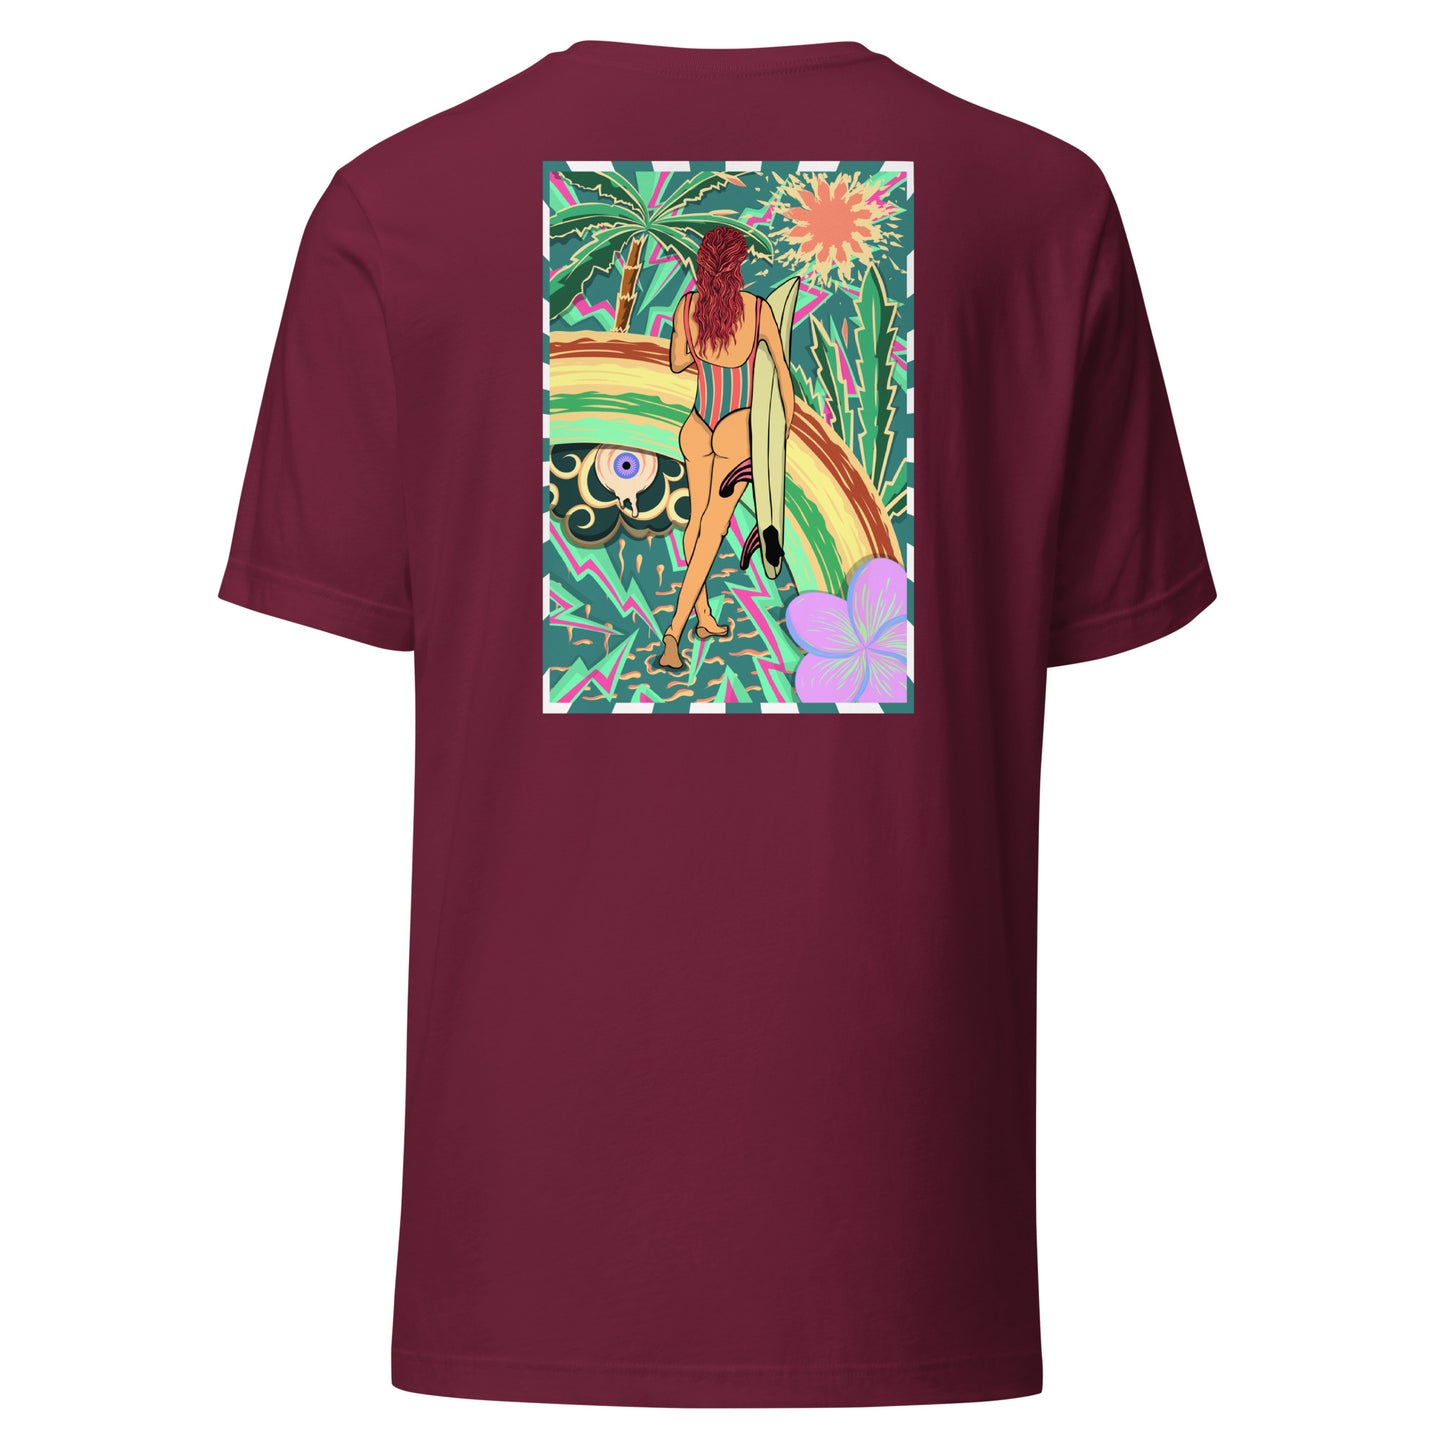 T-shirt surf vintage Walk Of Life surfeuse coloré hippie avec des palmier, fleur, arc en ciel et œil psychédélique. Tshirt dos bordeaux